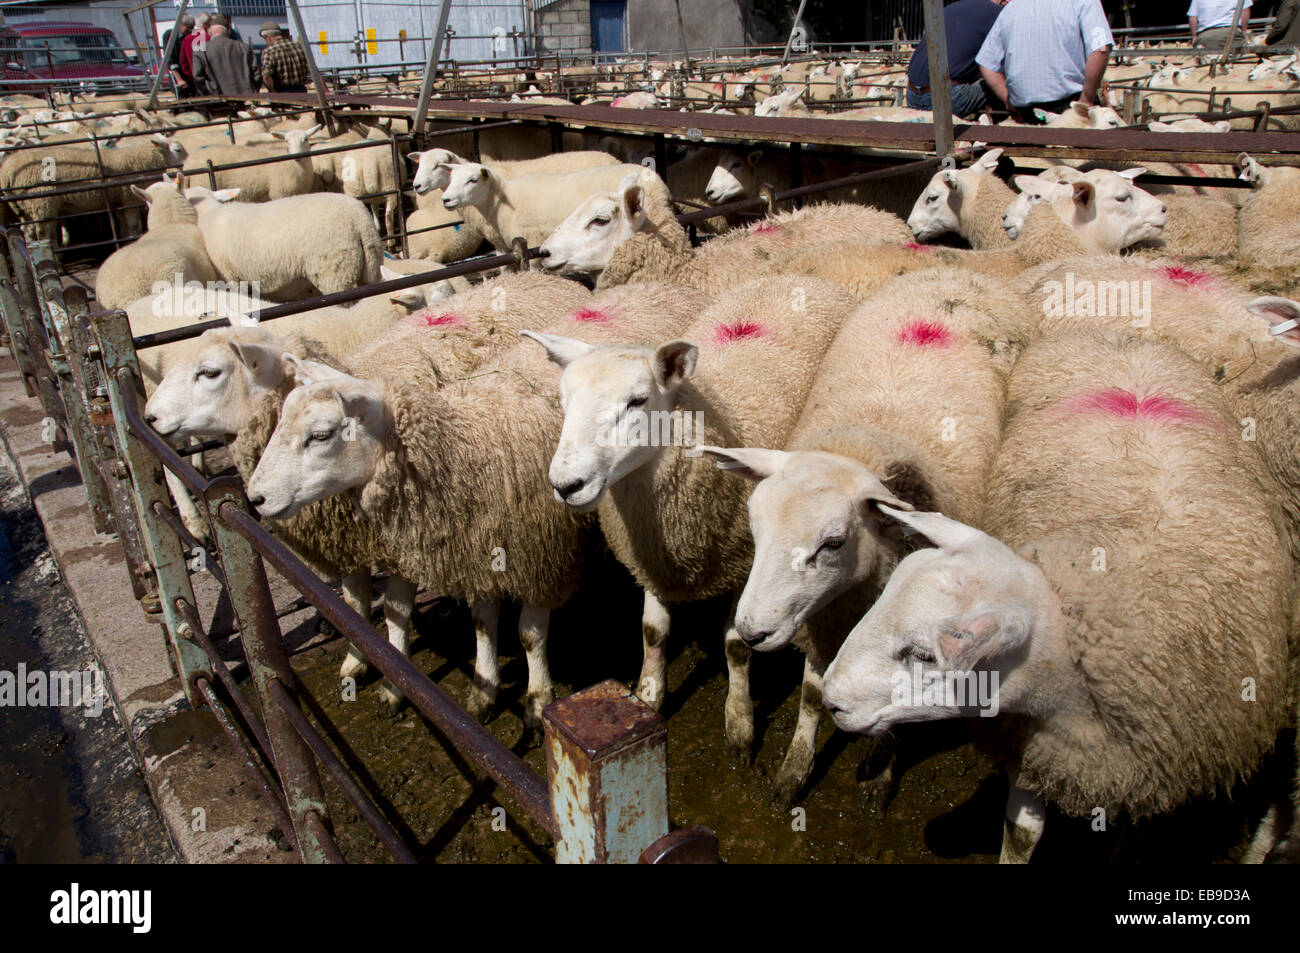 UK, Wales, Powys, Builth Wells, sheep at market Stock Photo